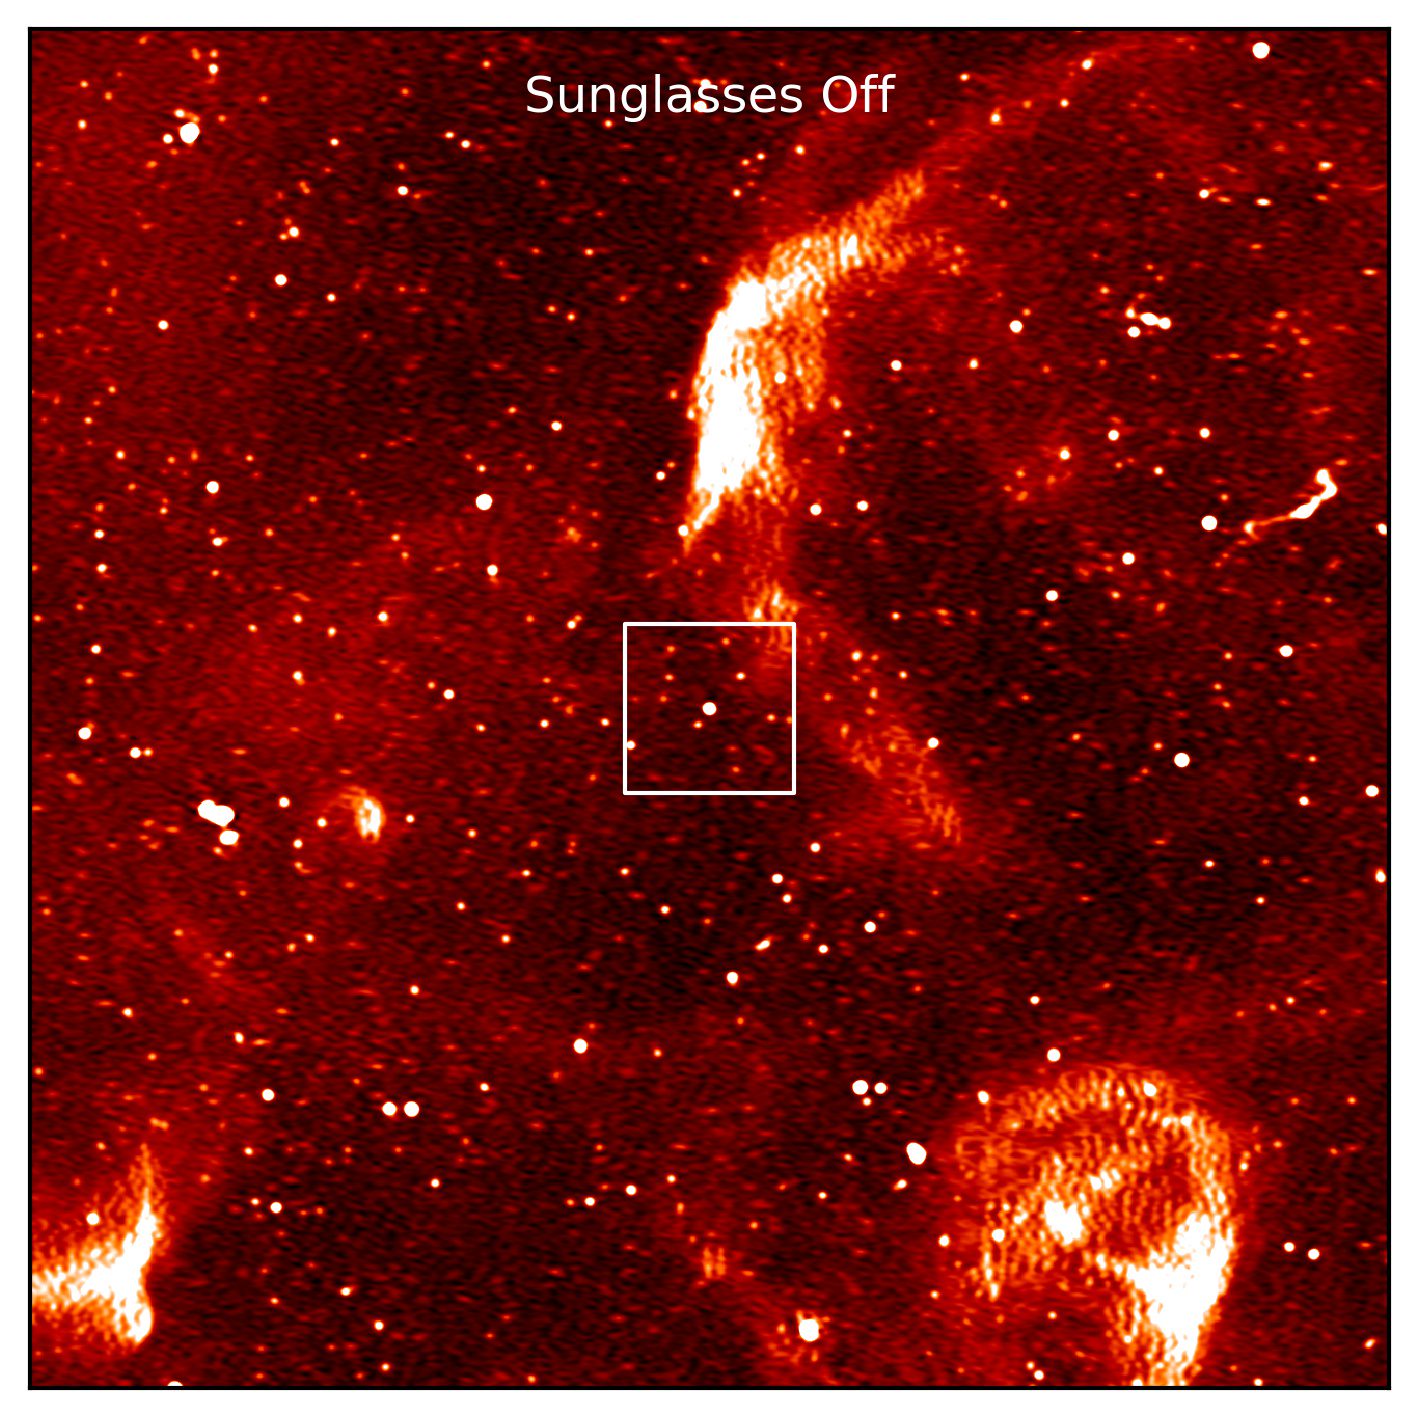 Pulsar PSR J0523-7125 visible in MeerKAT imagery.